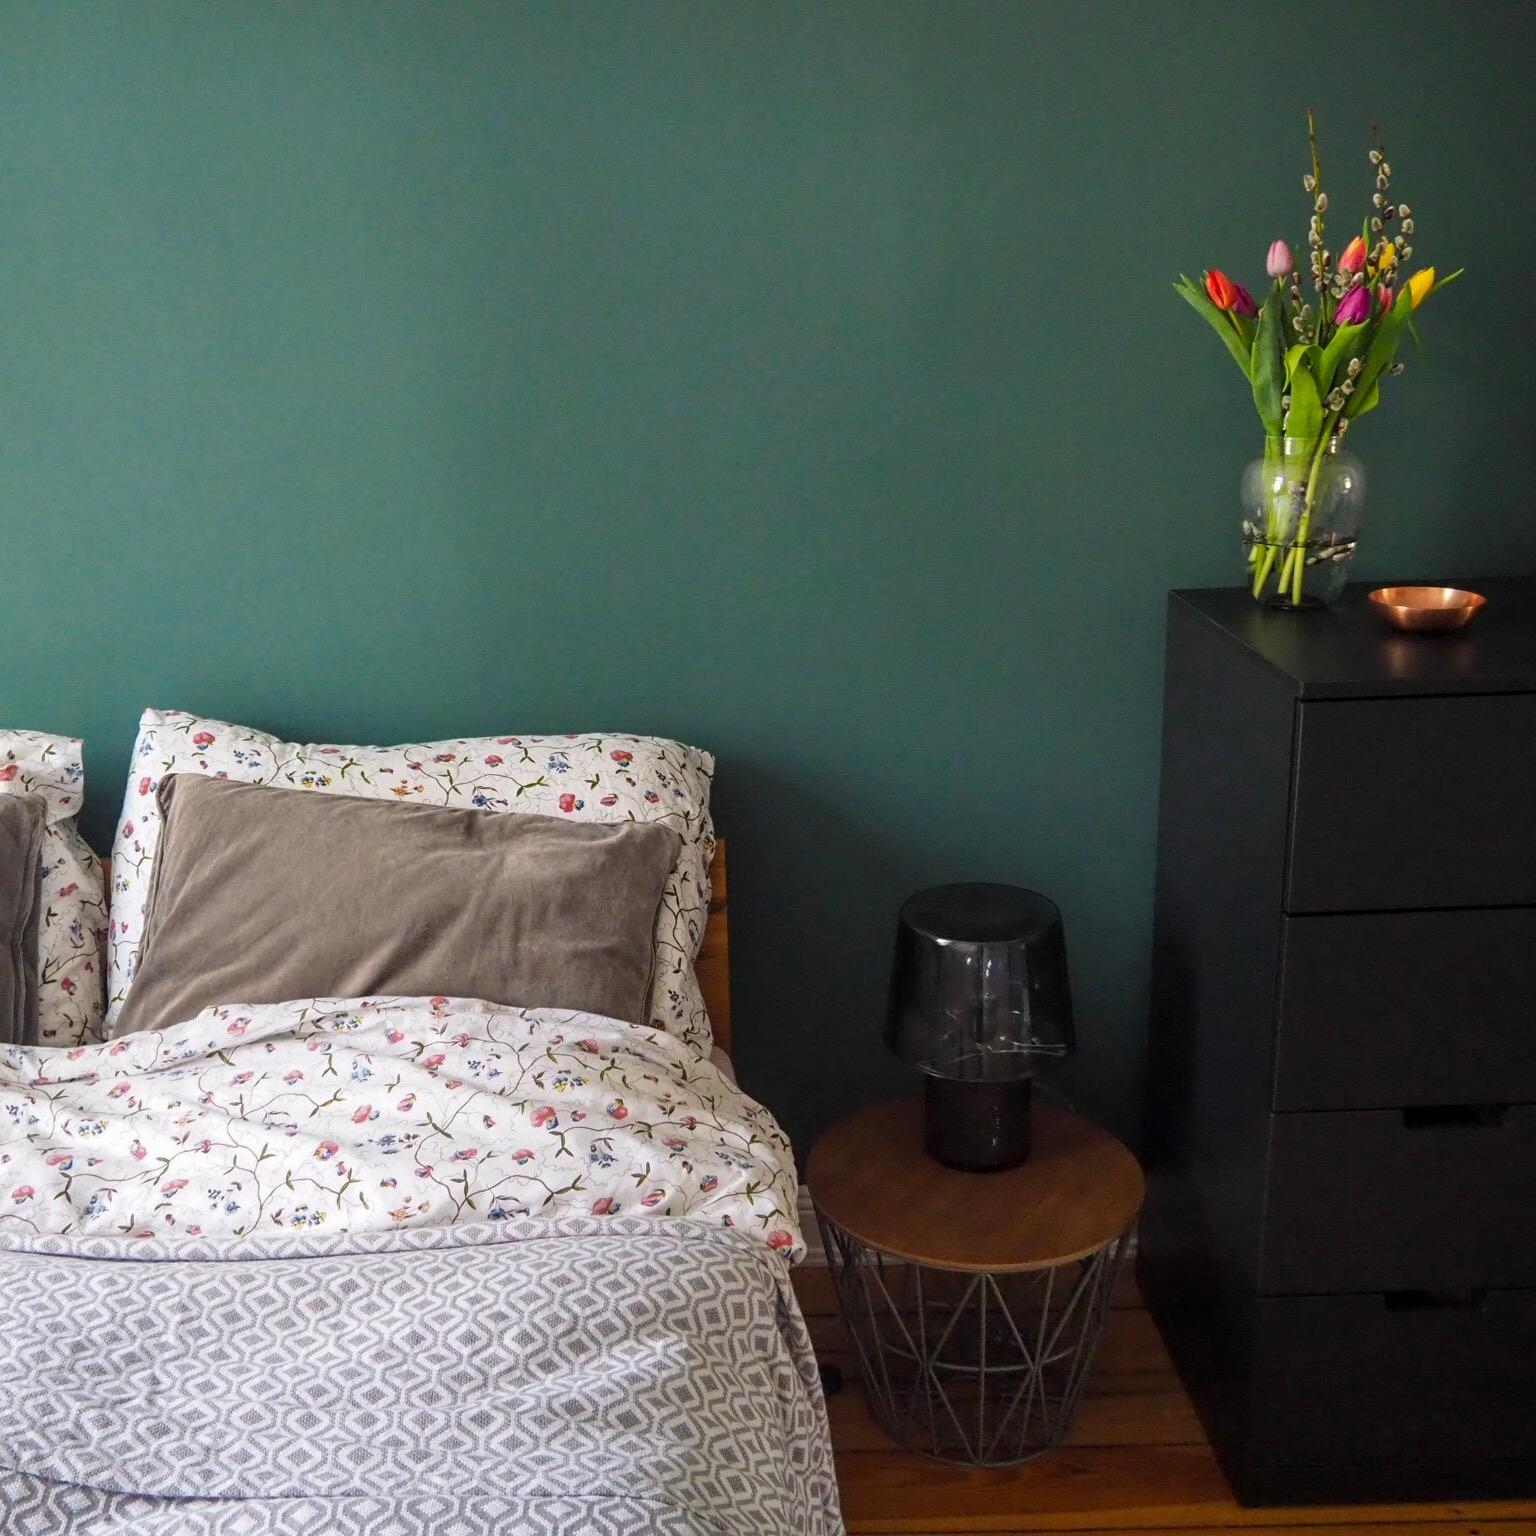 Happy Sunday! 
#bedroomdetails #schlafzimmer #grün #wandfarbe #beistelltisch #freshflowers #hygge #bett